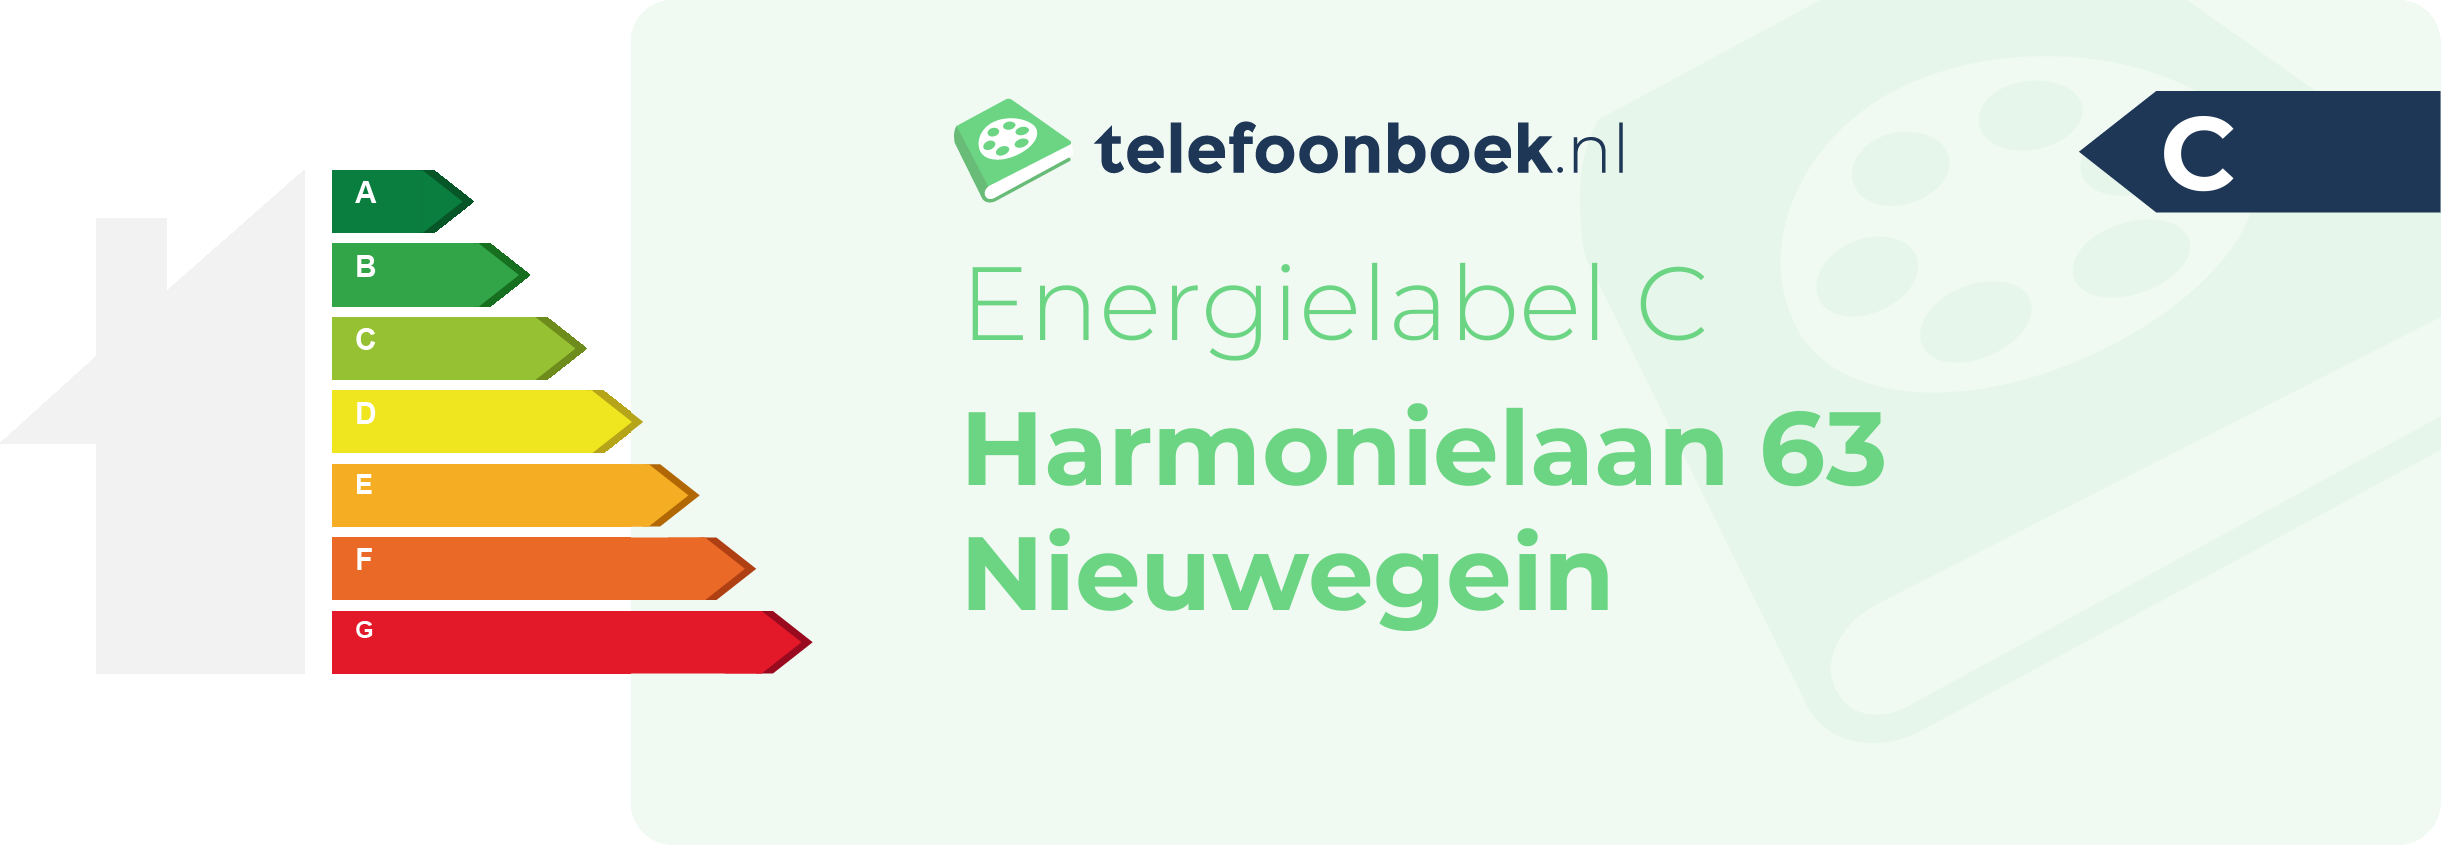 Energielabel Harmonielaan 63 Nieuwegein